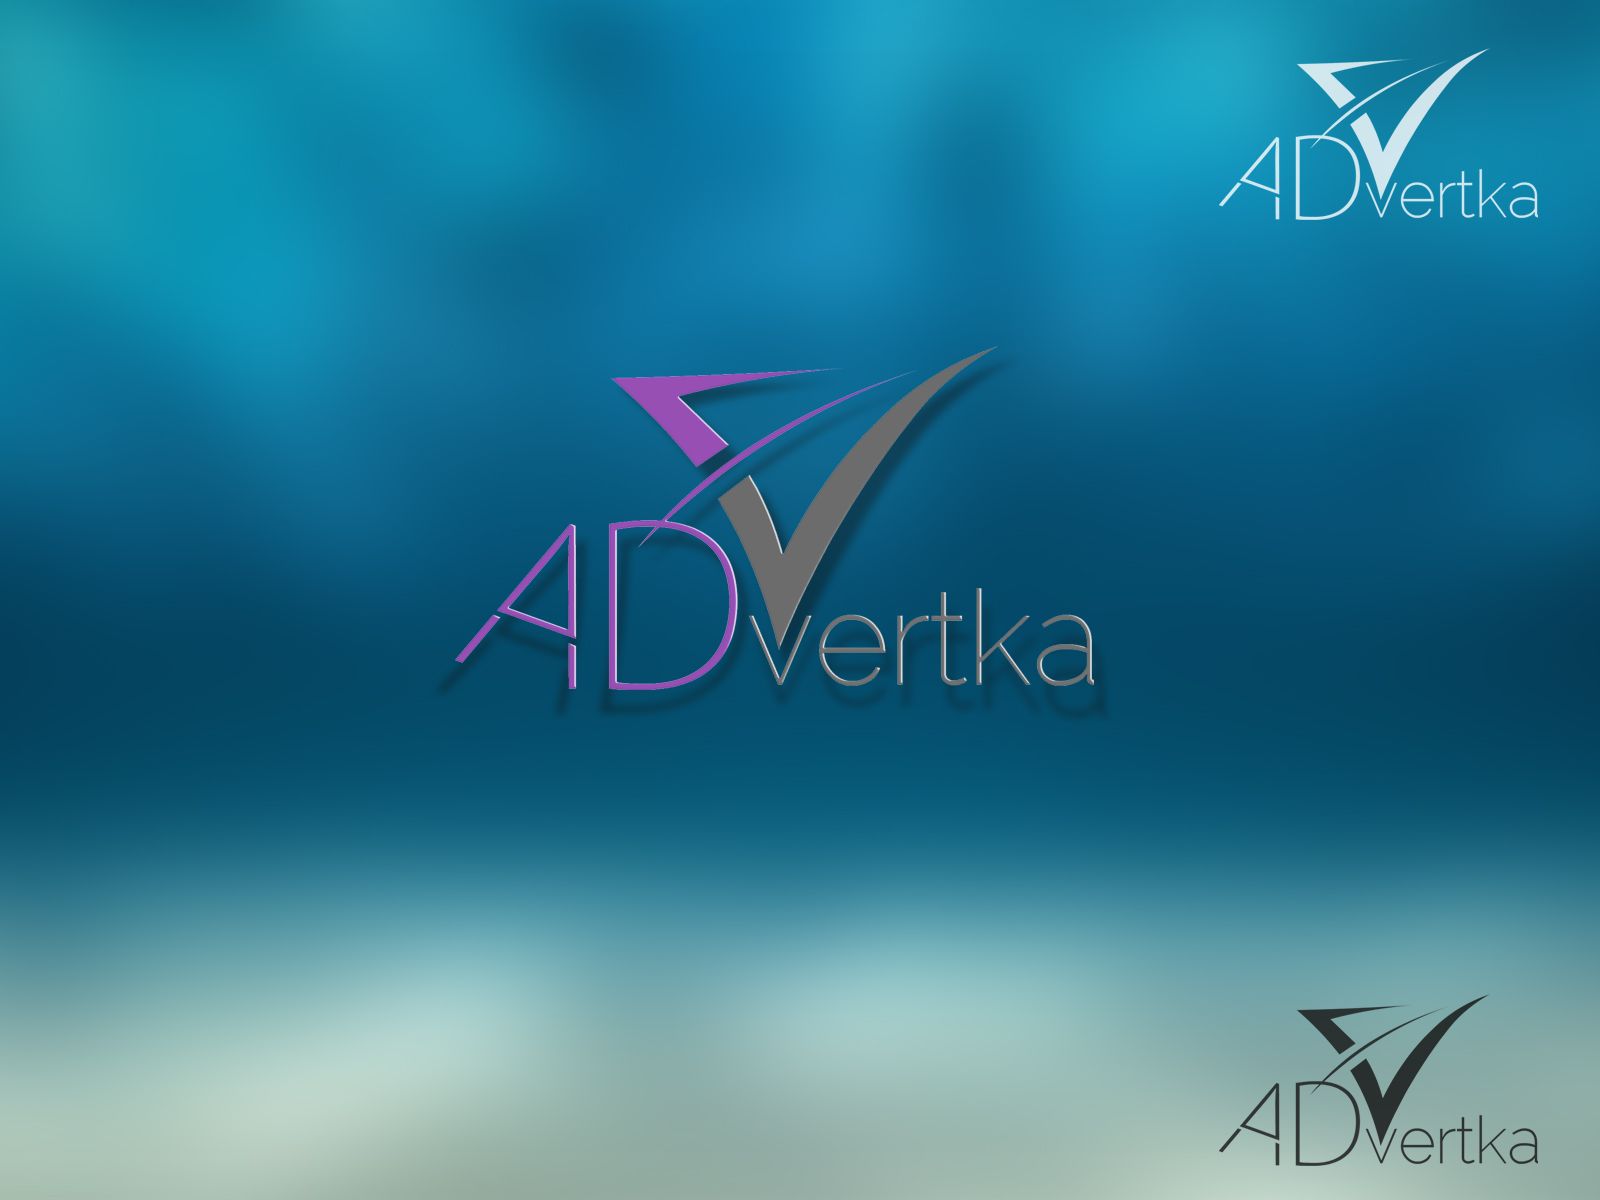 логотип для интернет агентства ADvertka - дизайнер Keroberas